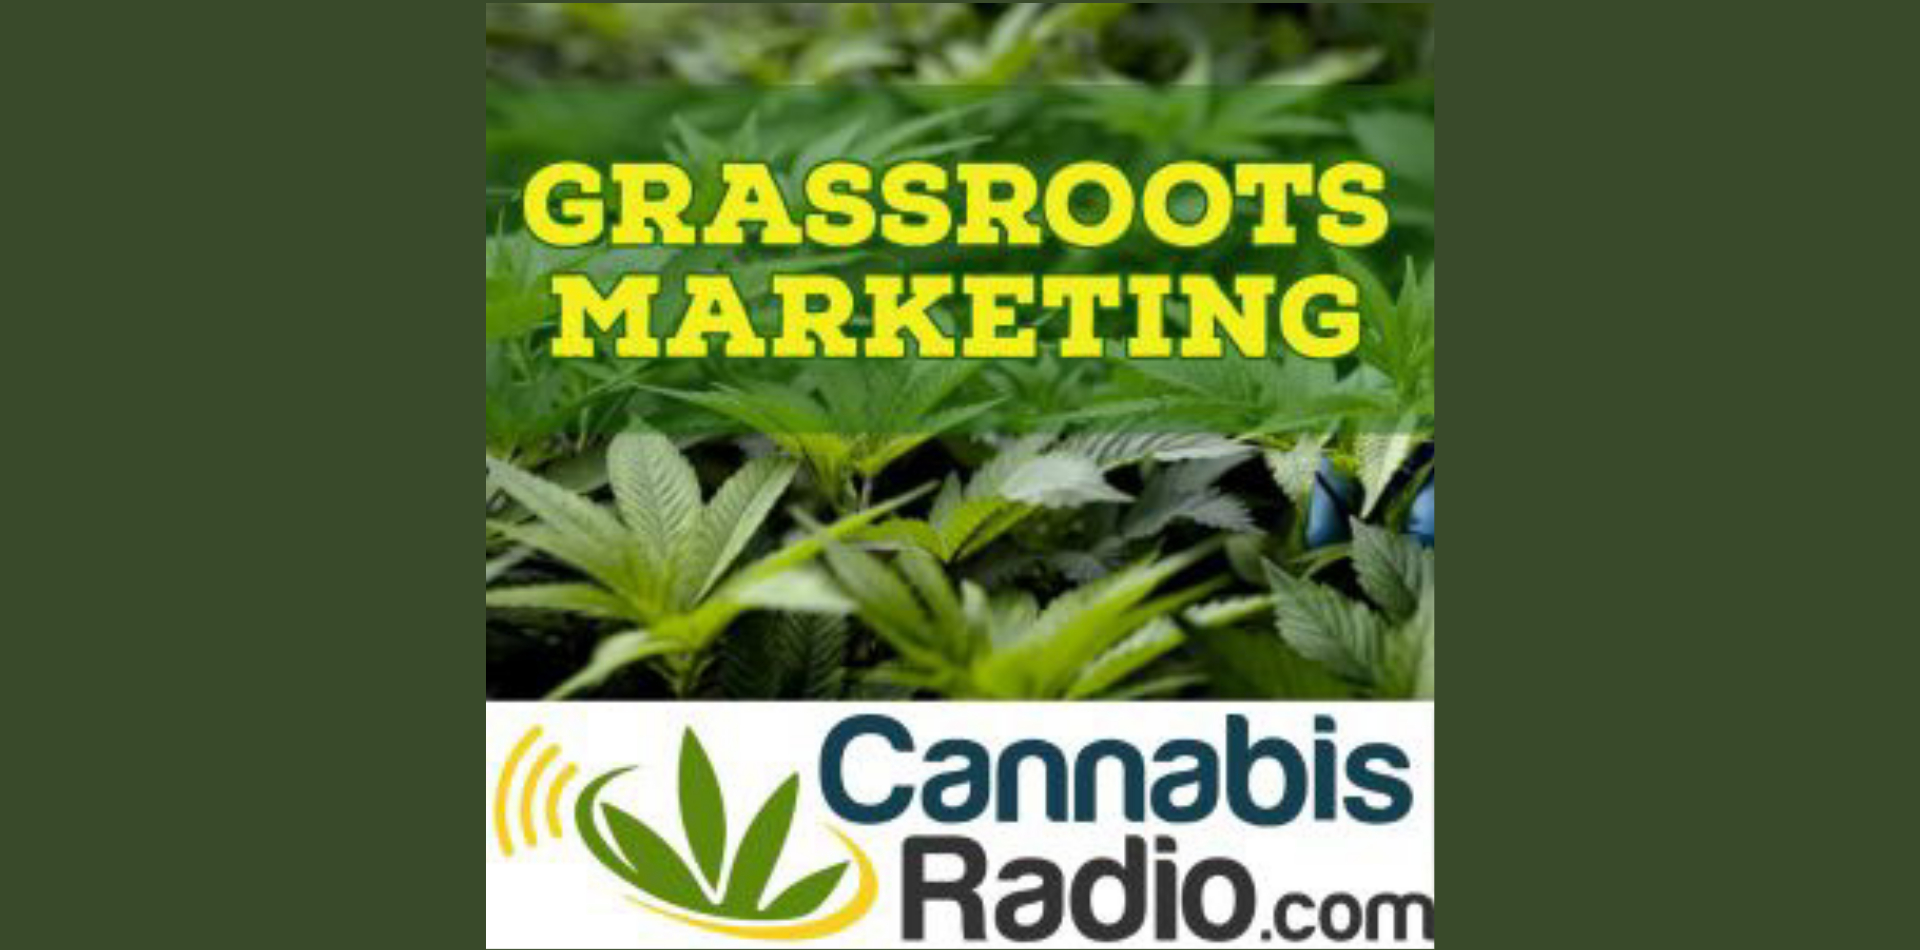 Pharmazeutisches Cannabis und der Einfluss von Big Pharma - Grassroots Marketing